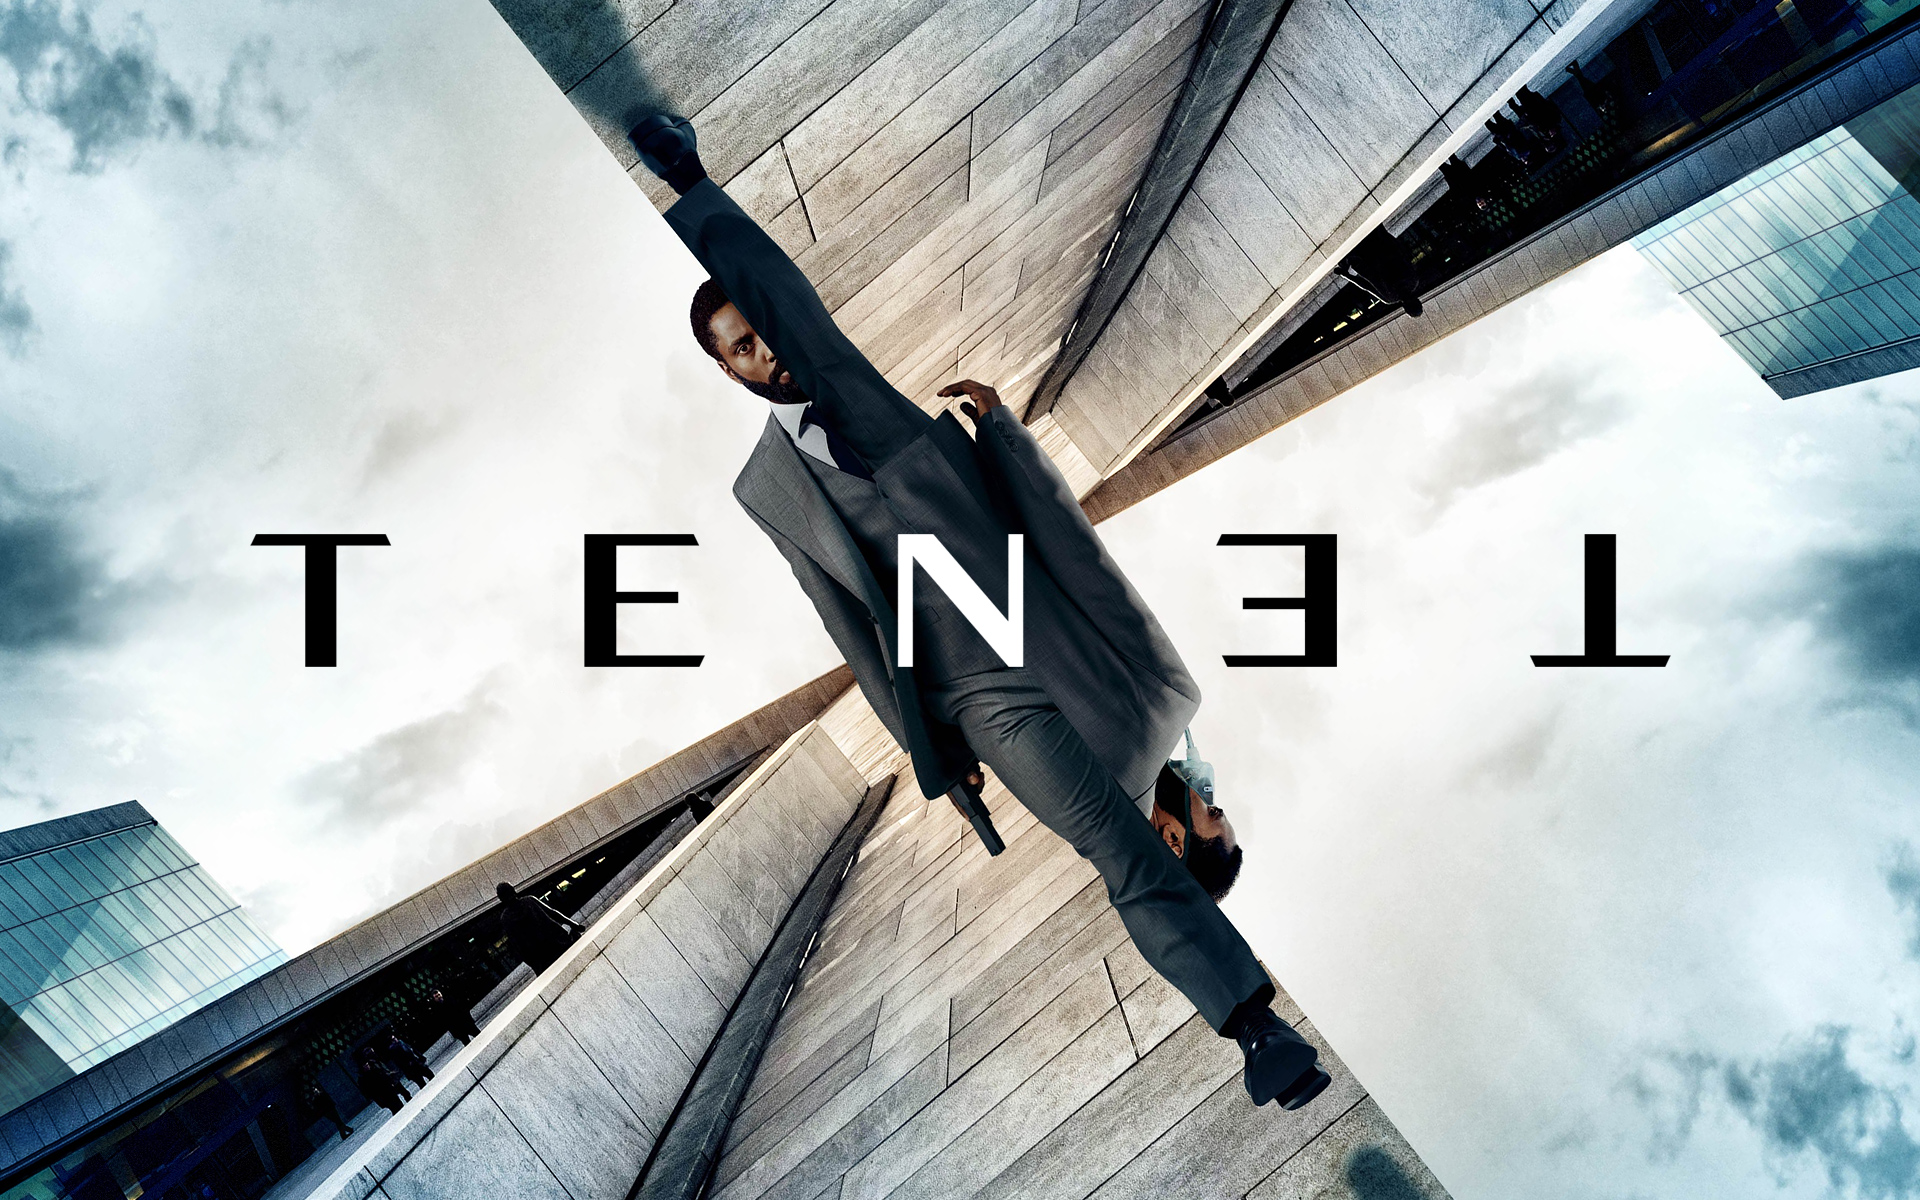 Christopher Nolan'ın yeni filmi Tenet'a müthiş bütçe